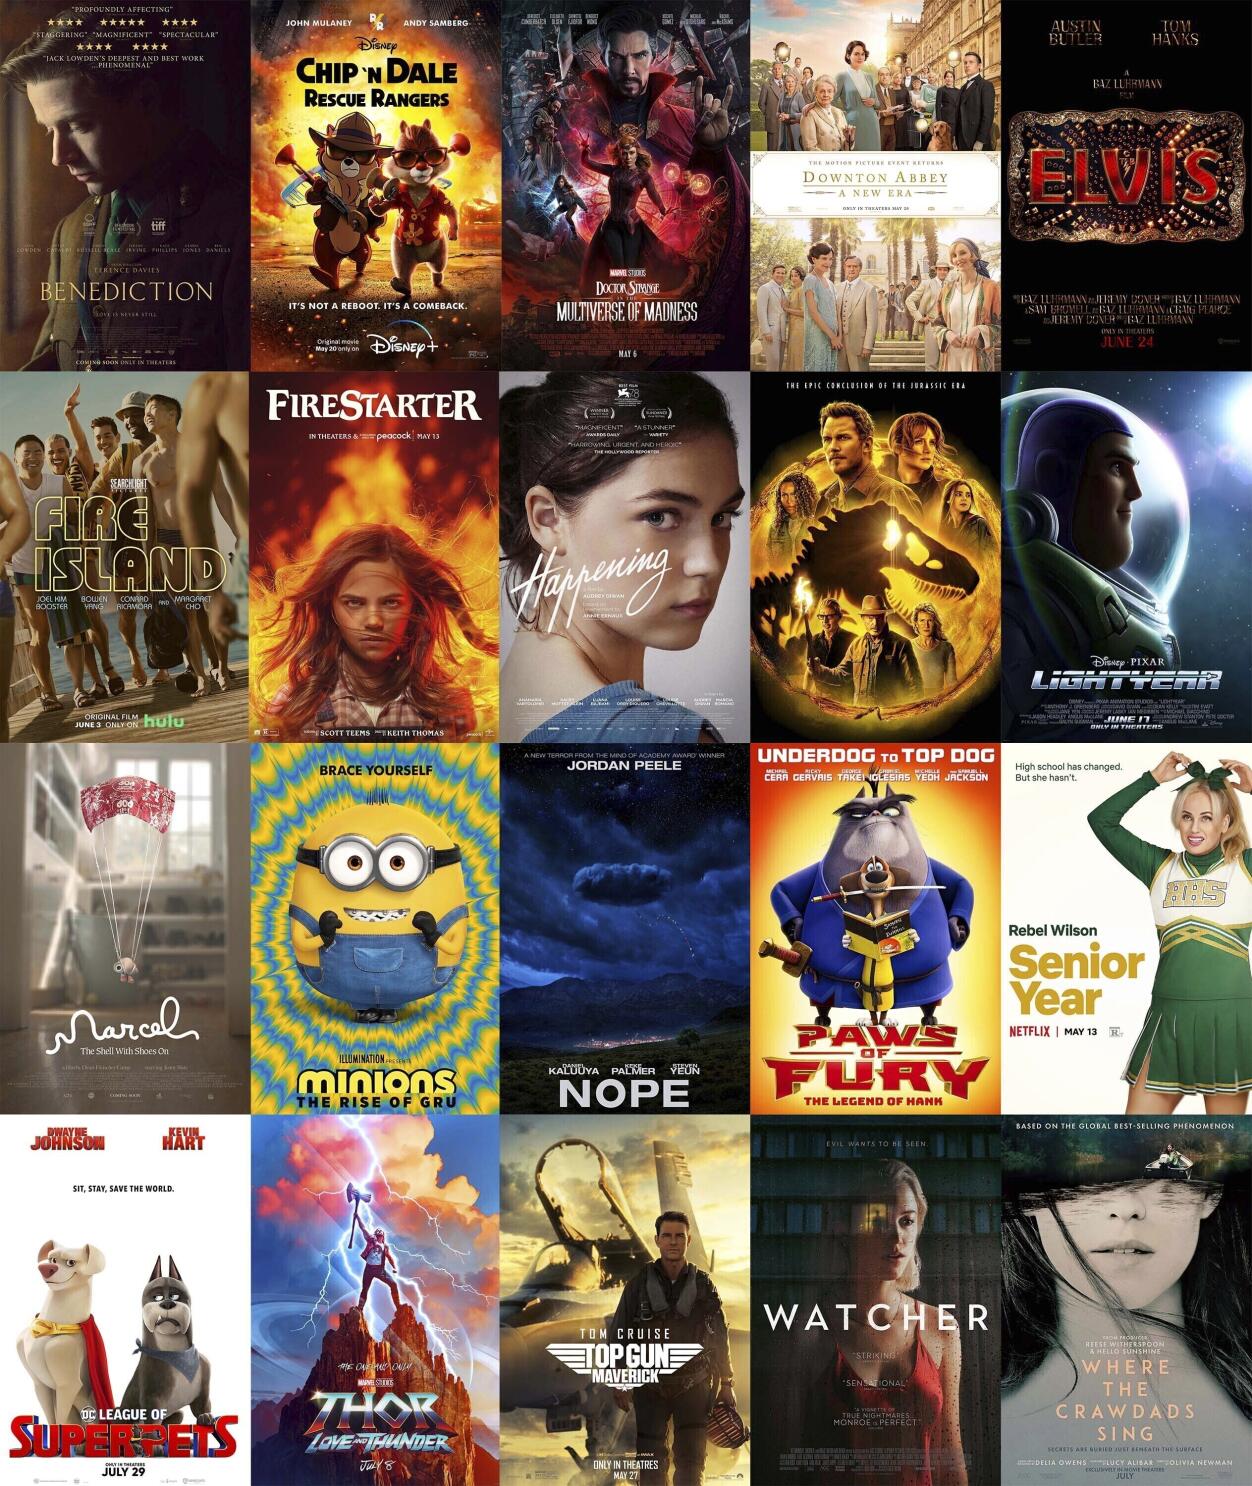 Me gusta el cine - Así están las cosas en #RottenTomatoes